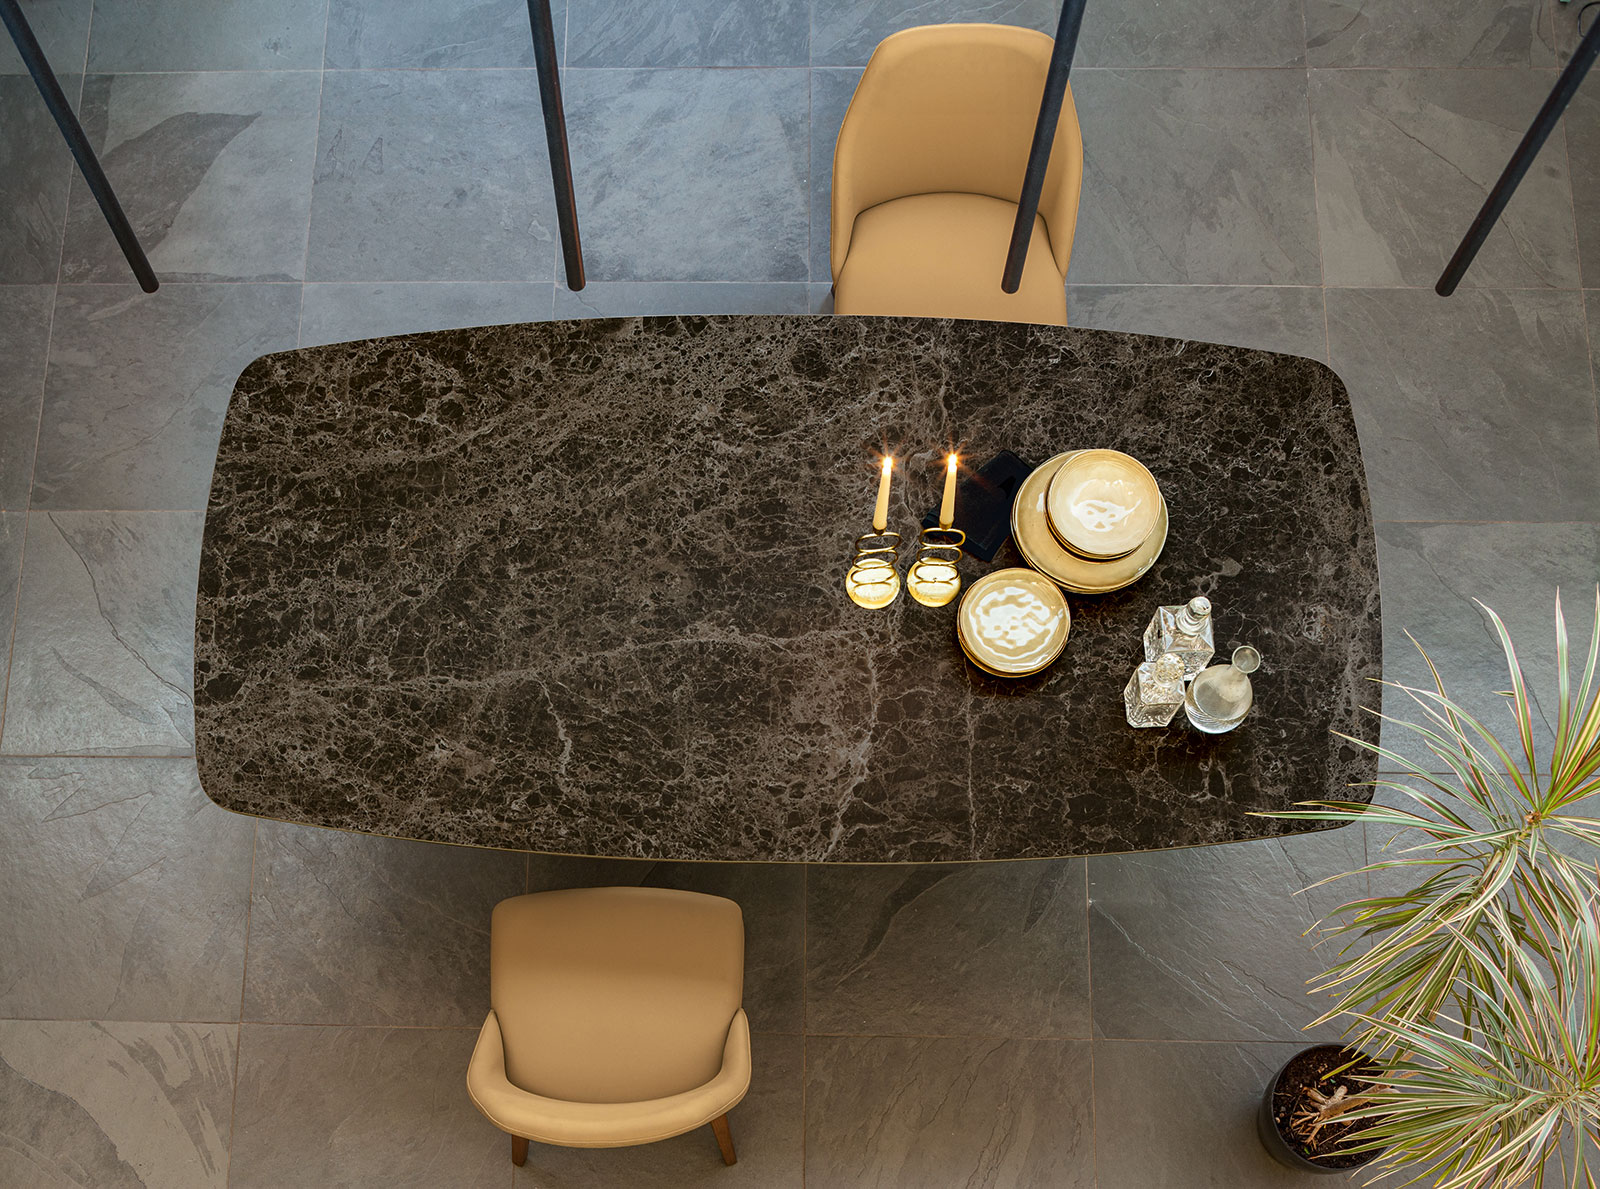 Tavolo da pranzo design in ceramica con base in metallo originale. Vendita online di mobili di lusso made in Italy con consegna gratuita.